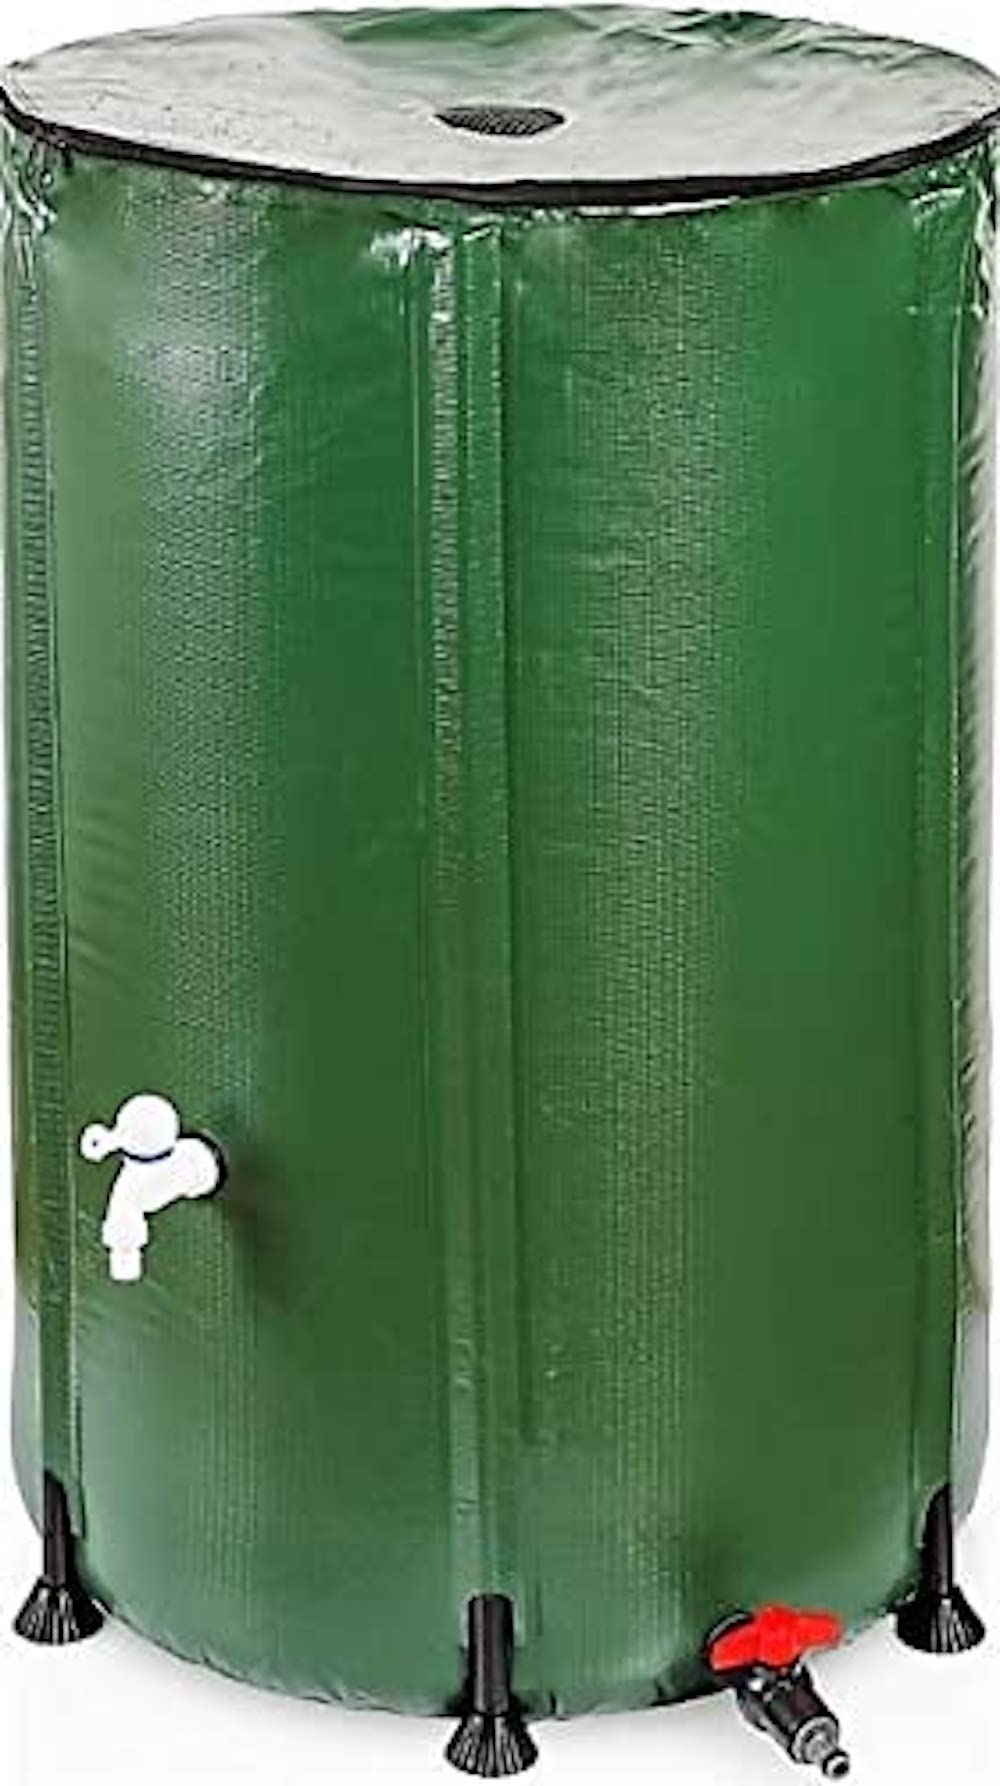 RENATA Faltbare grüne Regentonne aus UV-stabilem PVC, 750 Liter Volumen, inkl. Filter & Schlauchschnelladapter, Tonne, Regentonne, Mehrzweckfass, Kunststoffbehälter, Wassertank